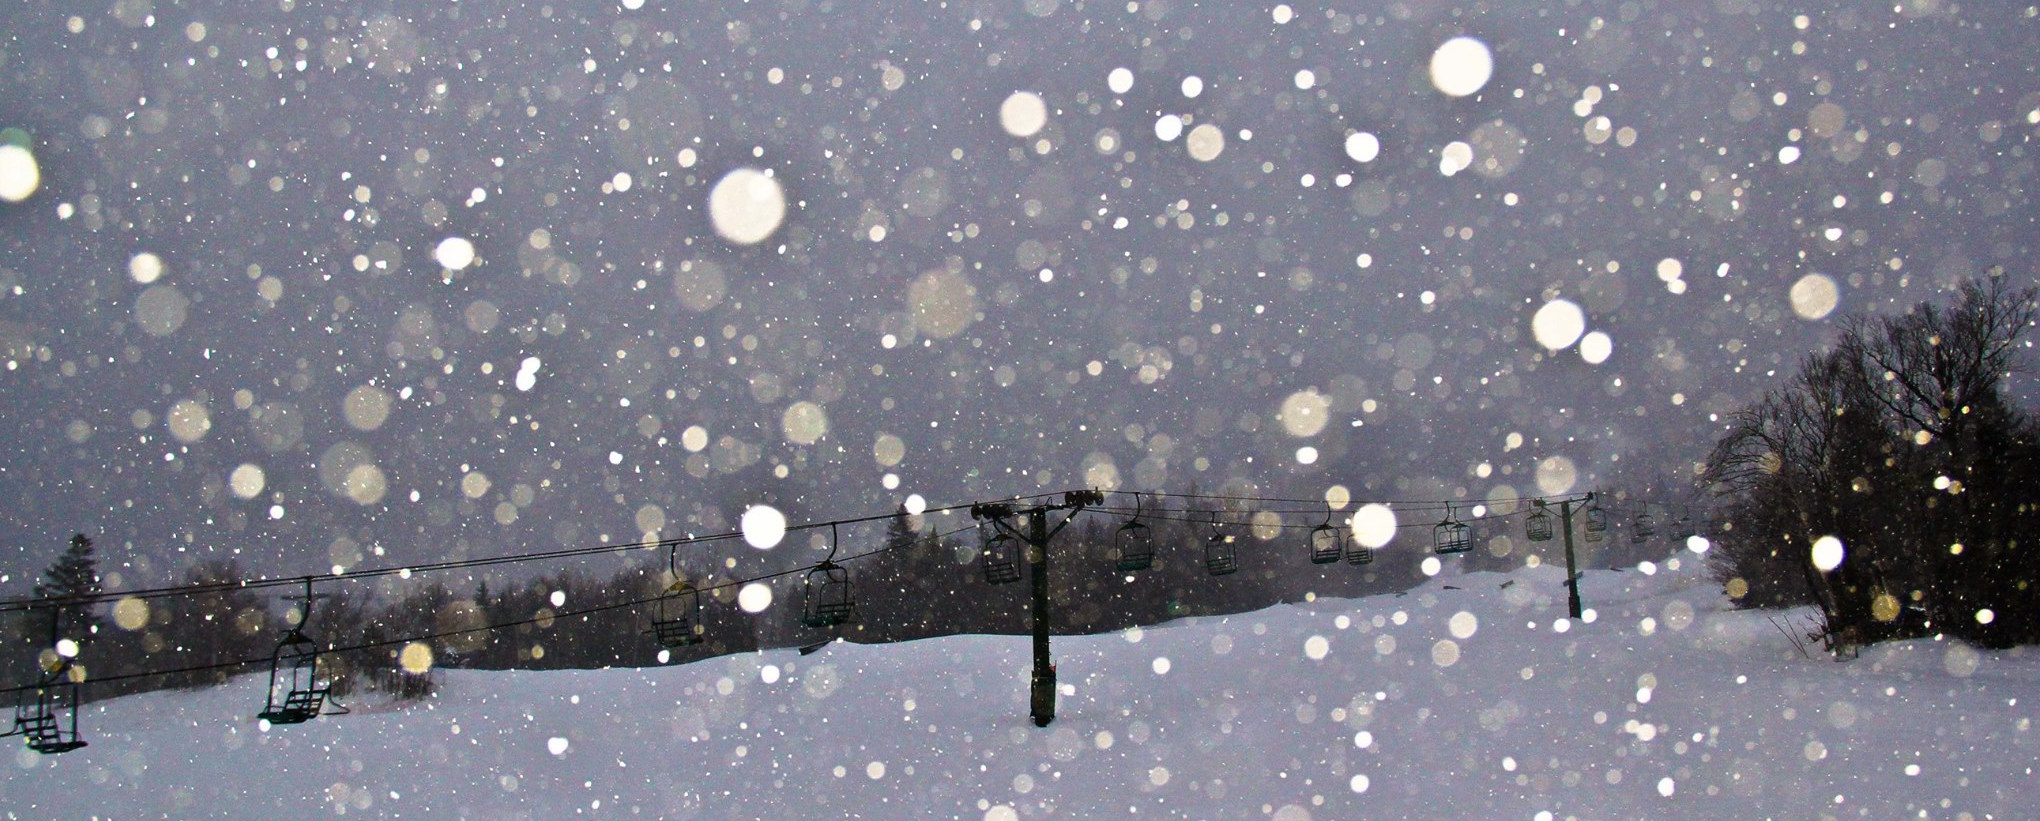 Stock image of Saddleback ski area, ME looking snowy on January 27th, 2015. Saddleback is under this Winter Weather Advisory. image: noaa, today